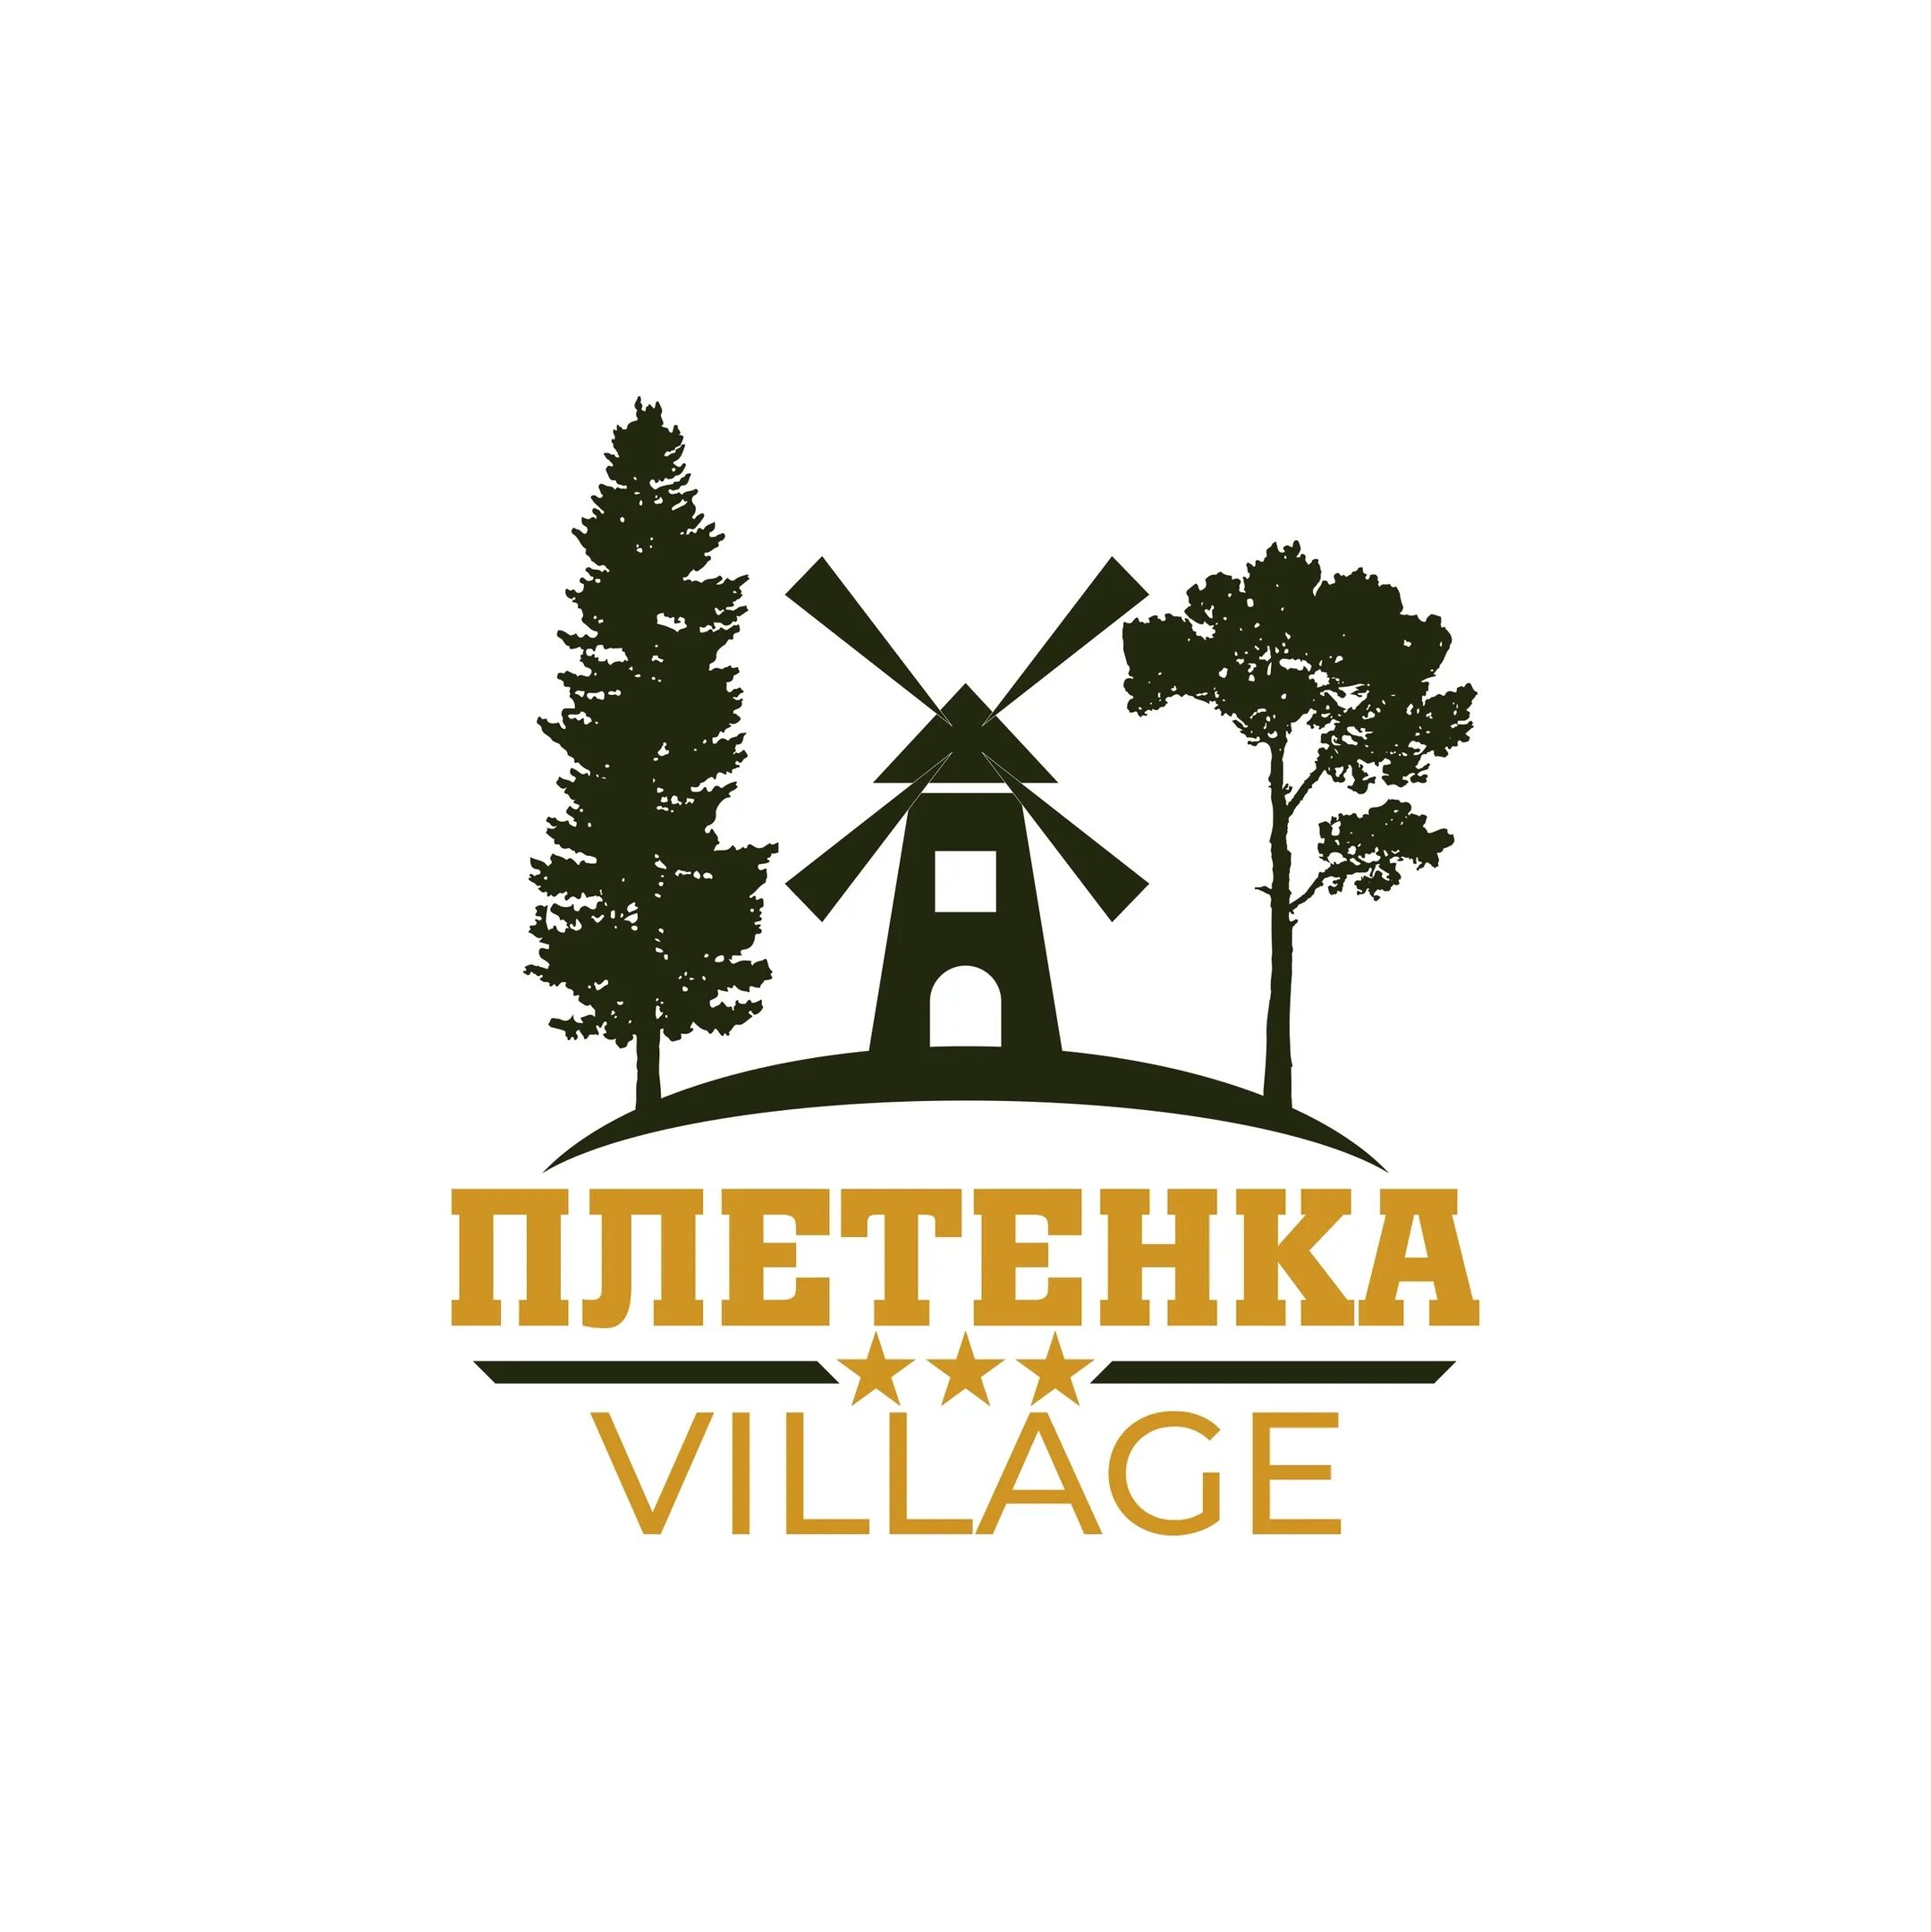 Village group. Плетенка Village. Туристическая деревня плетенка. Логотип турбазы. Логотип базы отдыха.